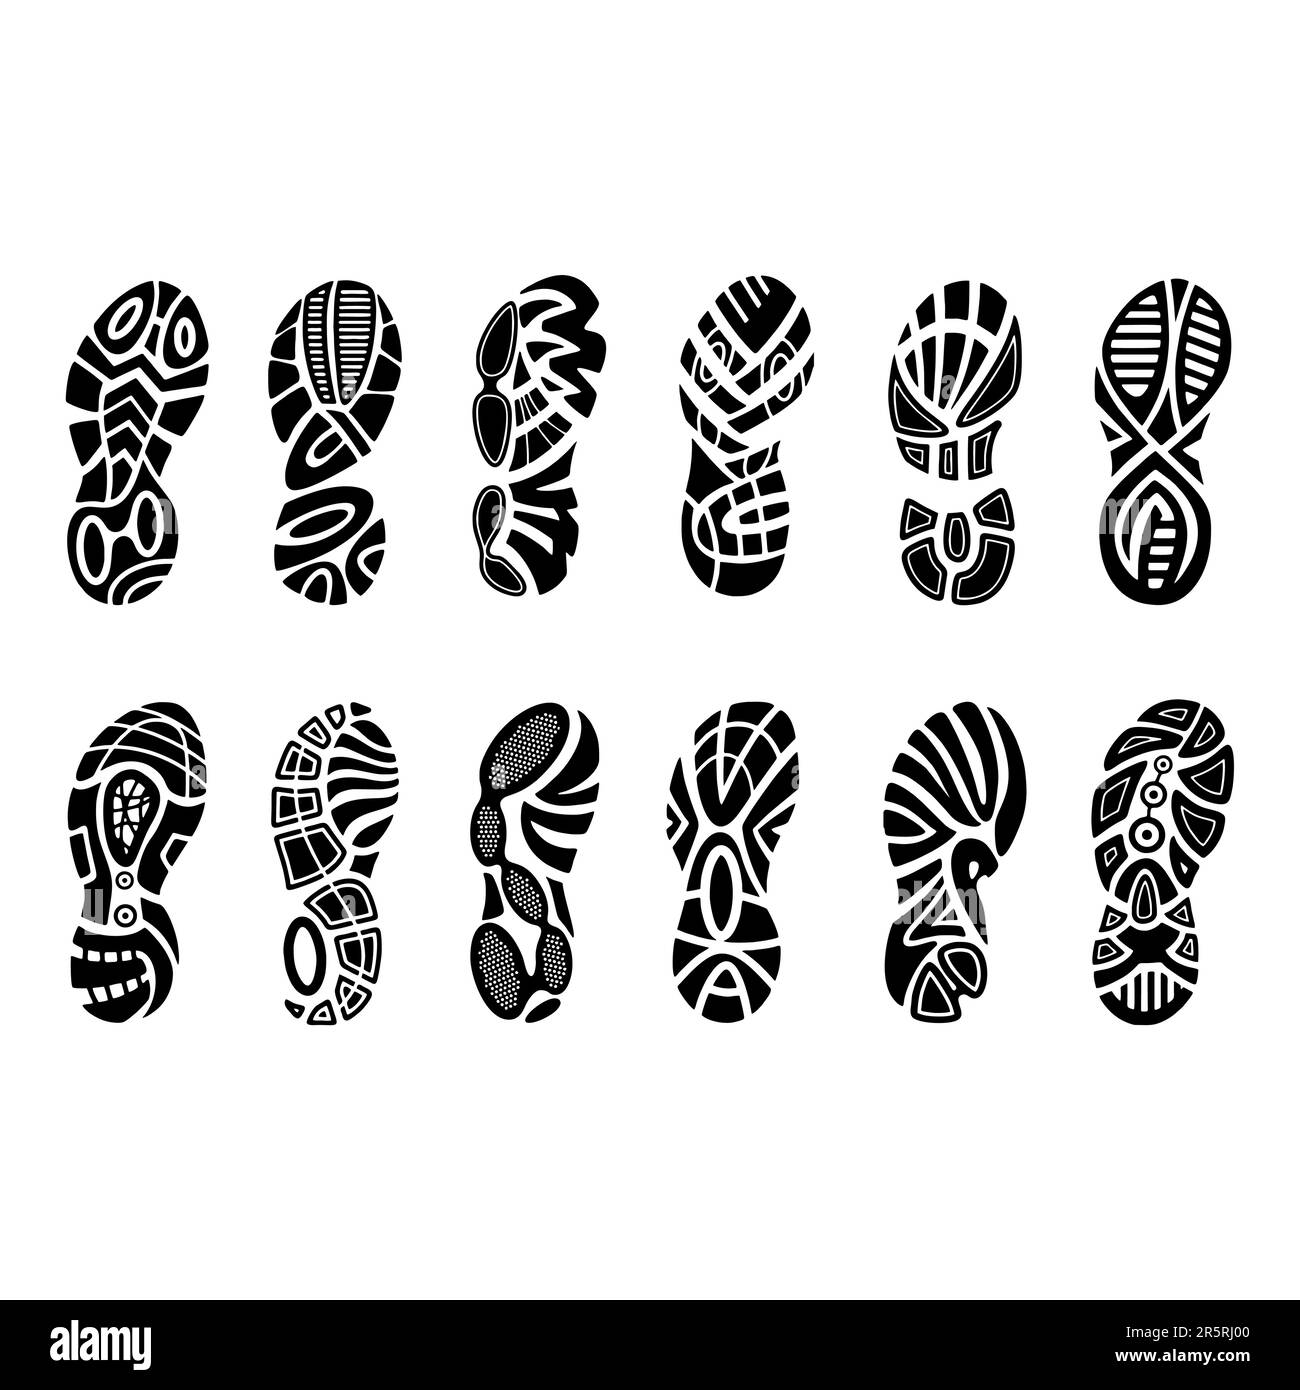 Empreintes de pieds chaussures humaines silhouette, ensemble vectoriel, isolé sur fond blanc Illustration de Vecteur